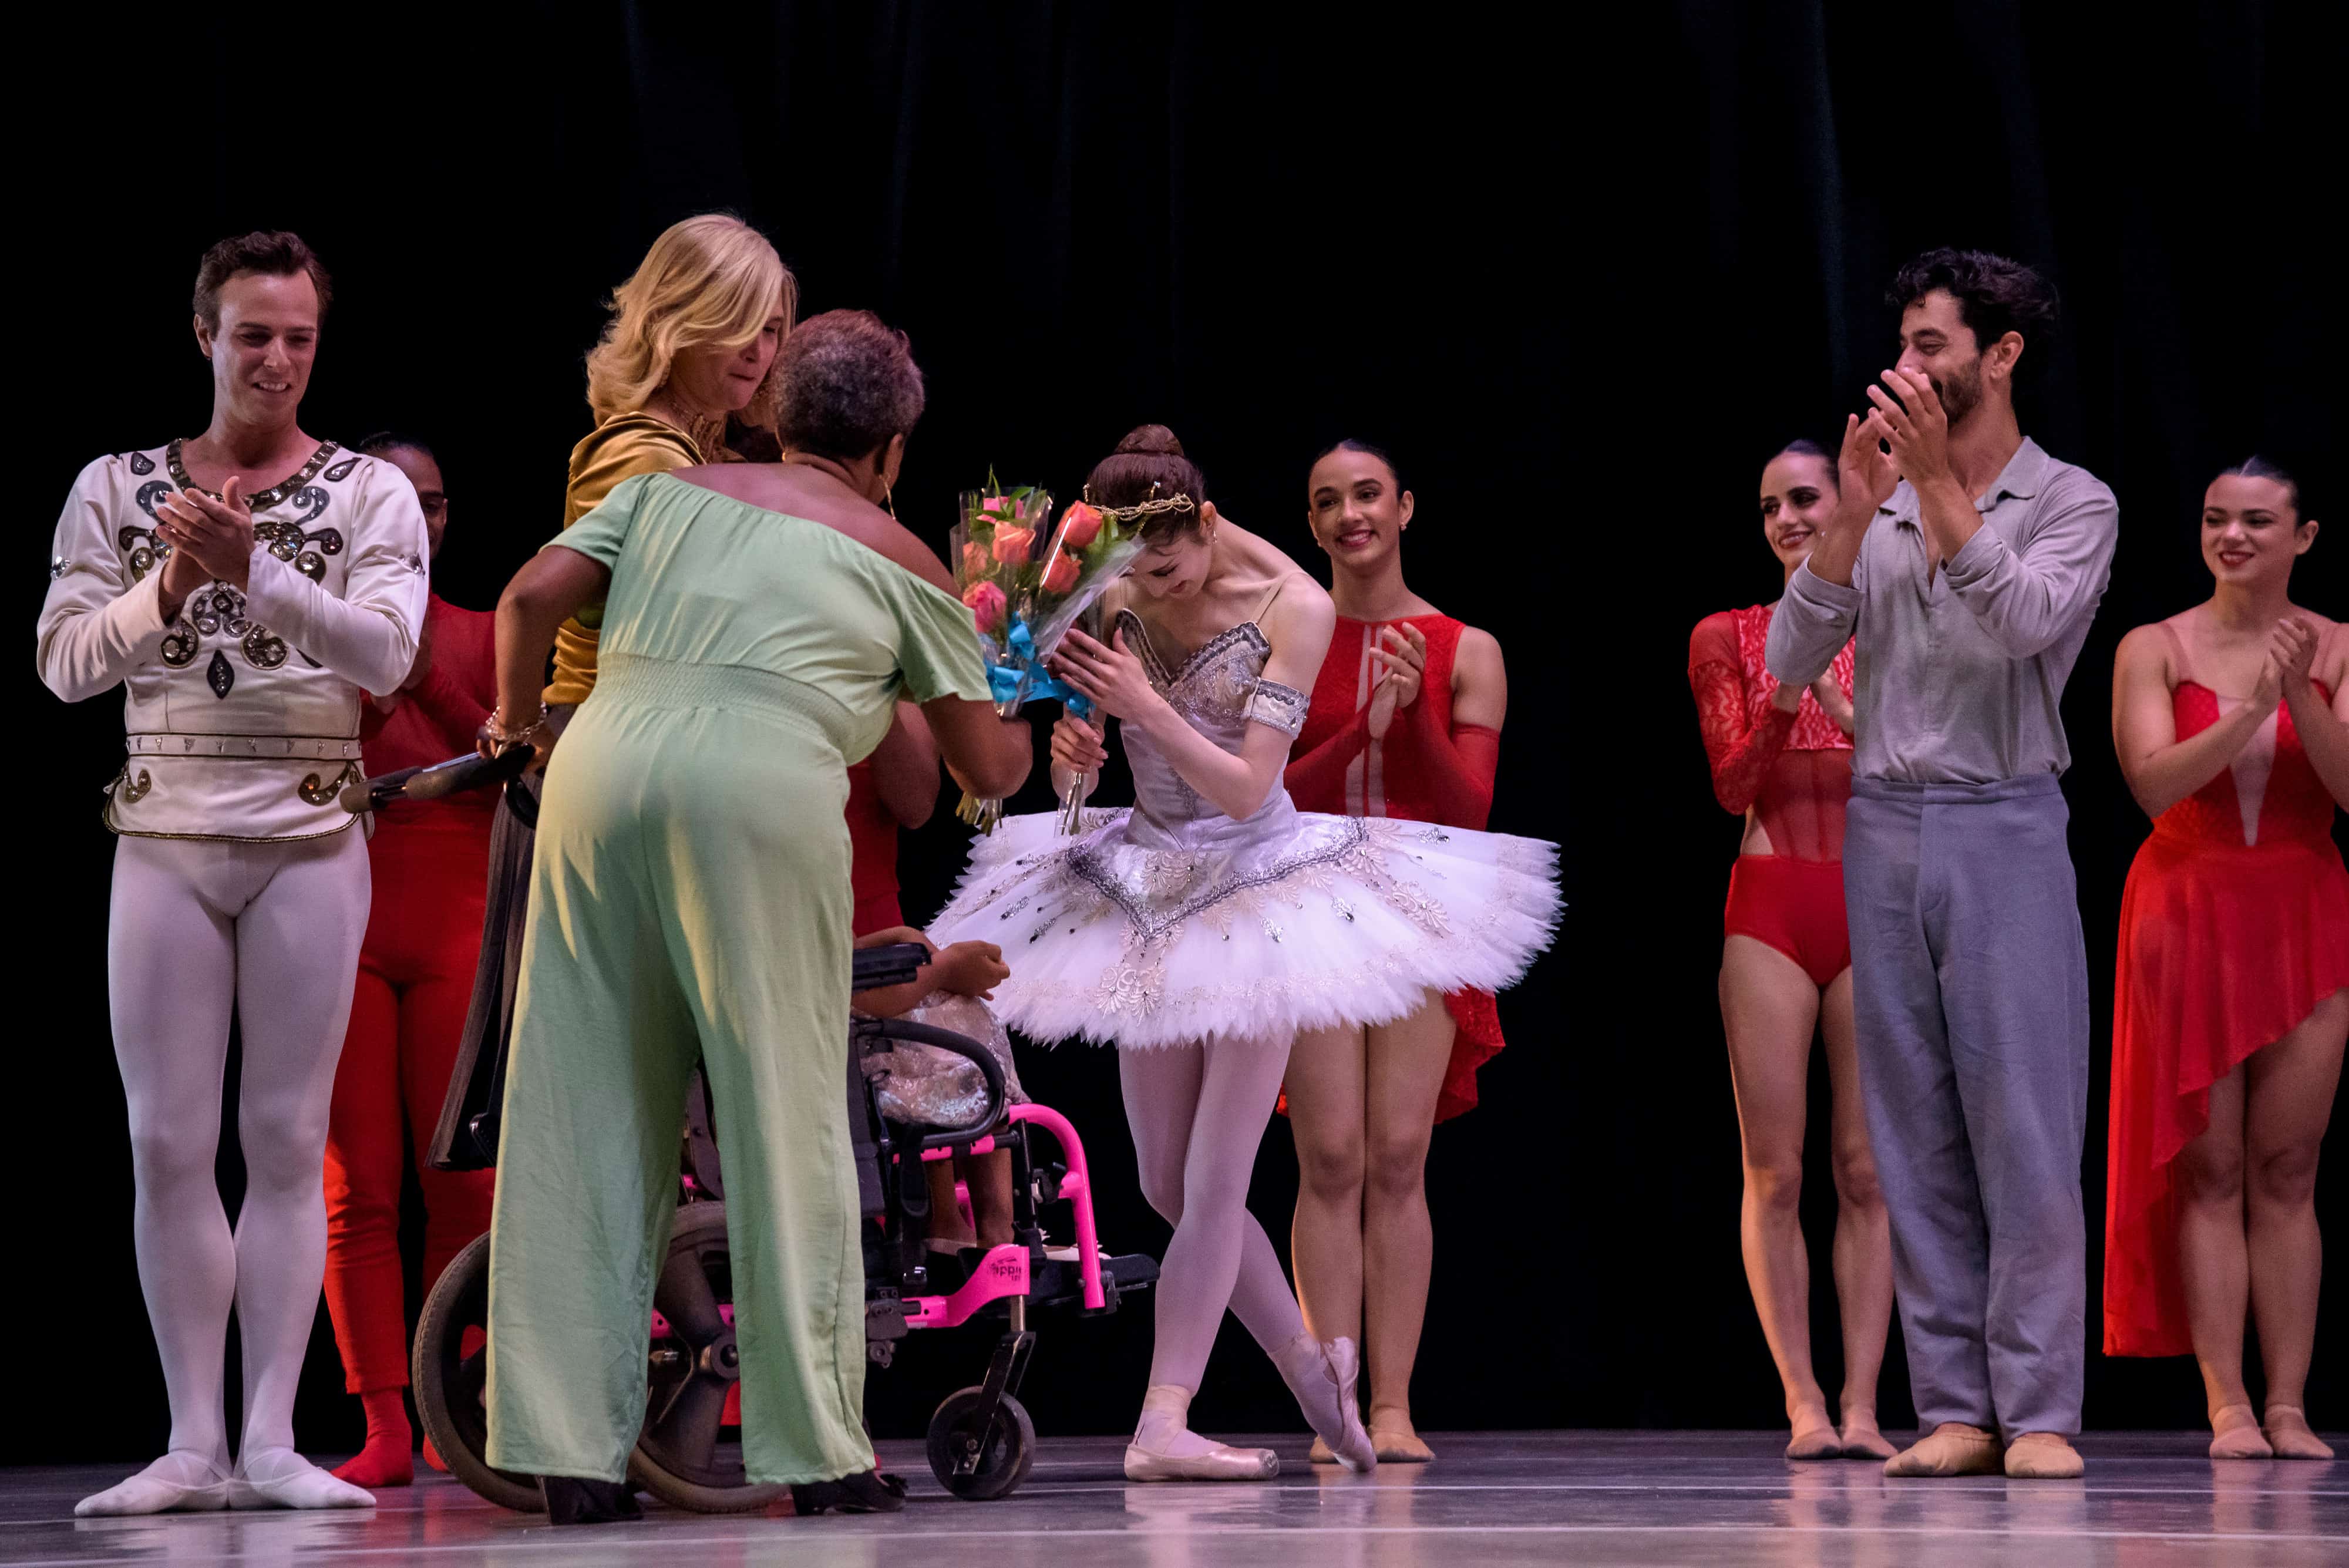 Una niña de la fundación Nido para Ángeles regaló rosas al elenco de bailarines al final de la obra